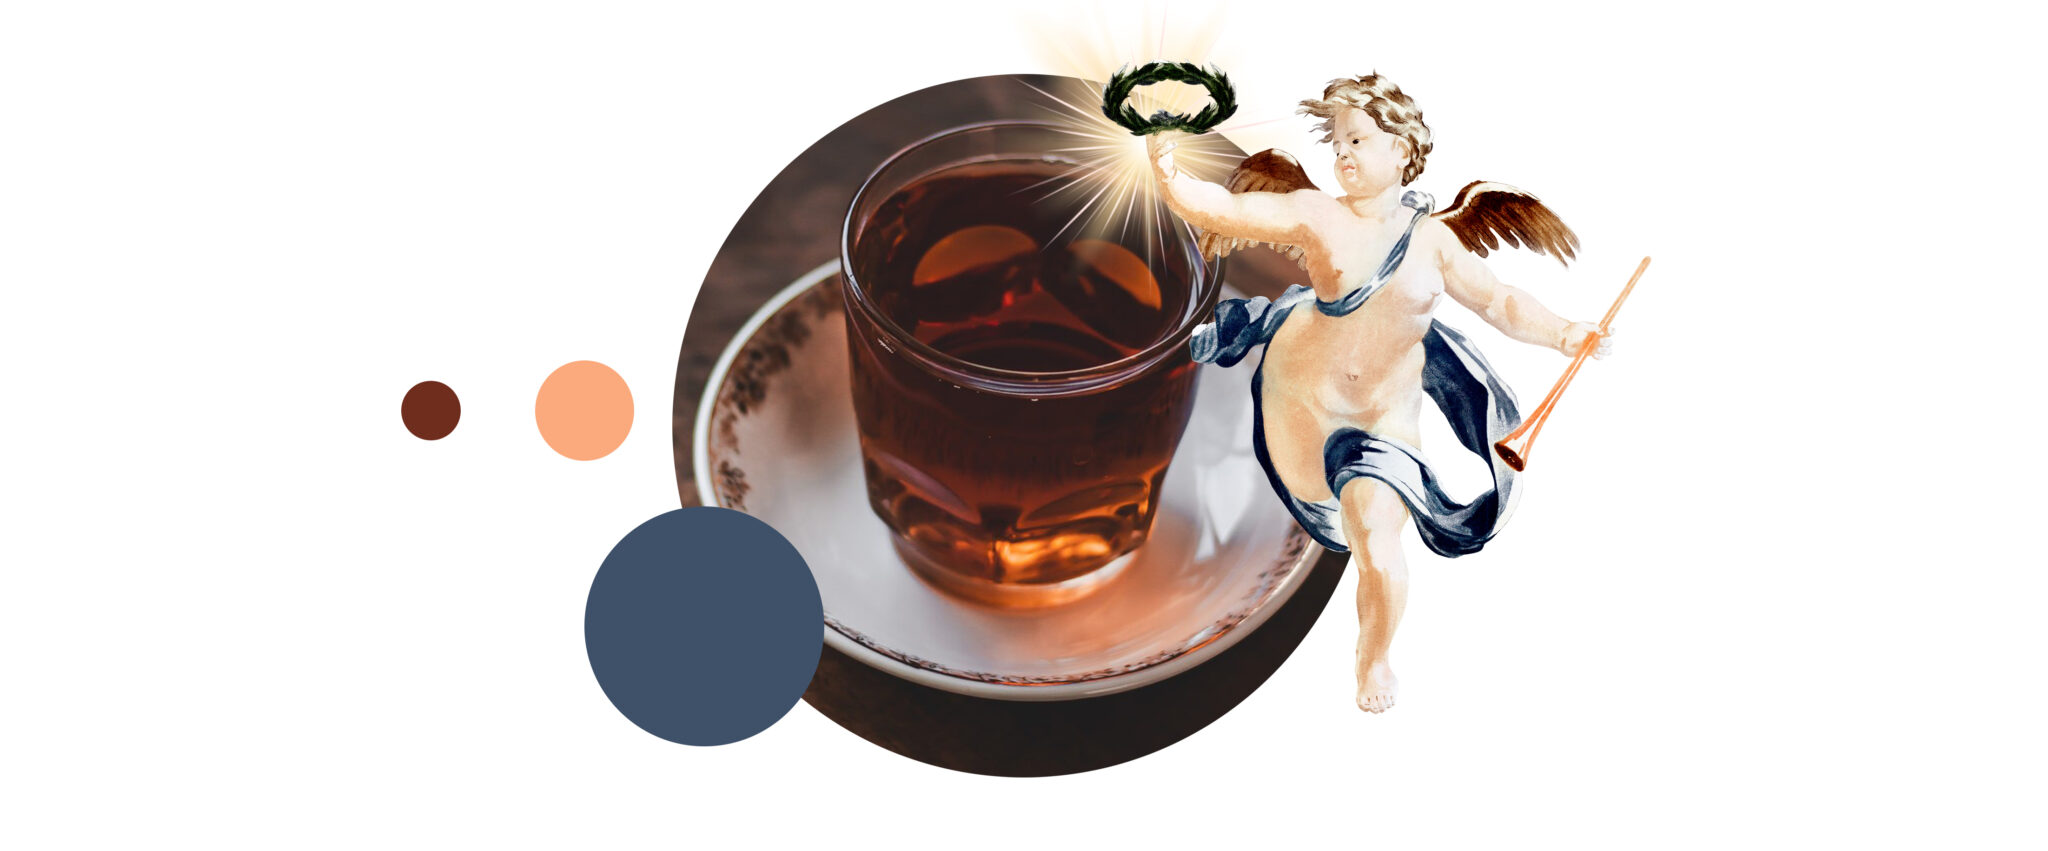 Impreza herbaciana: połączenie herbaty i whisky